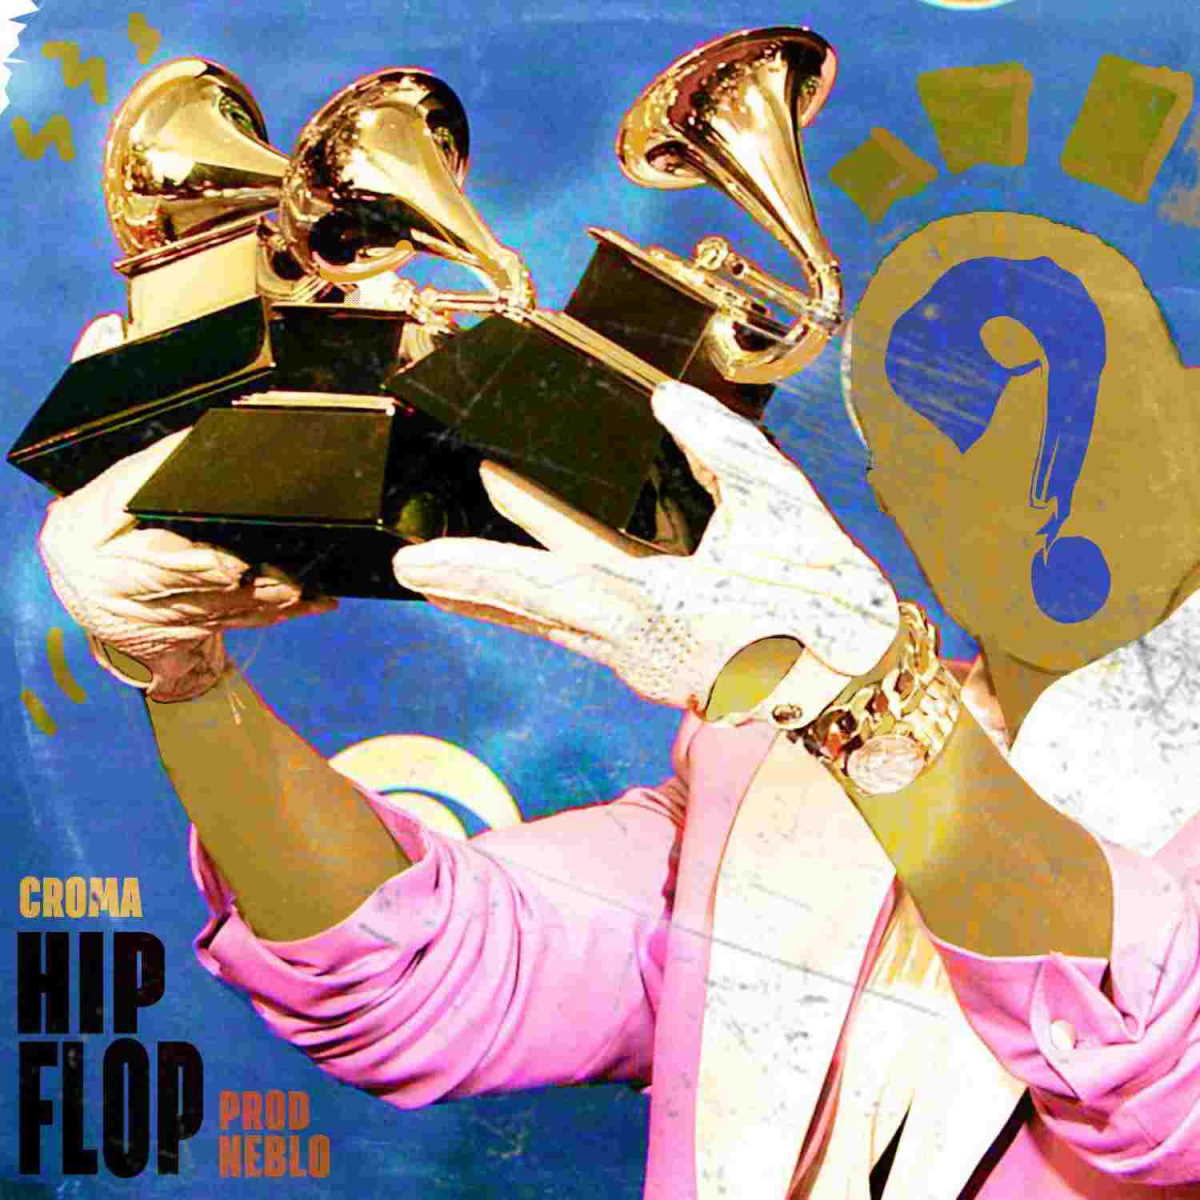 CROMA prod. NEBLO, “Hip Flop” è il nuovo singolo del rapper salentino